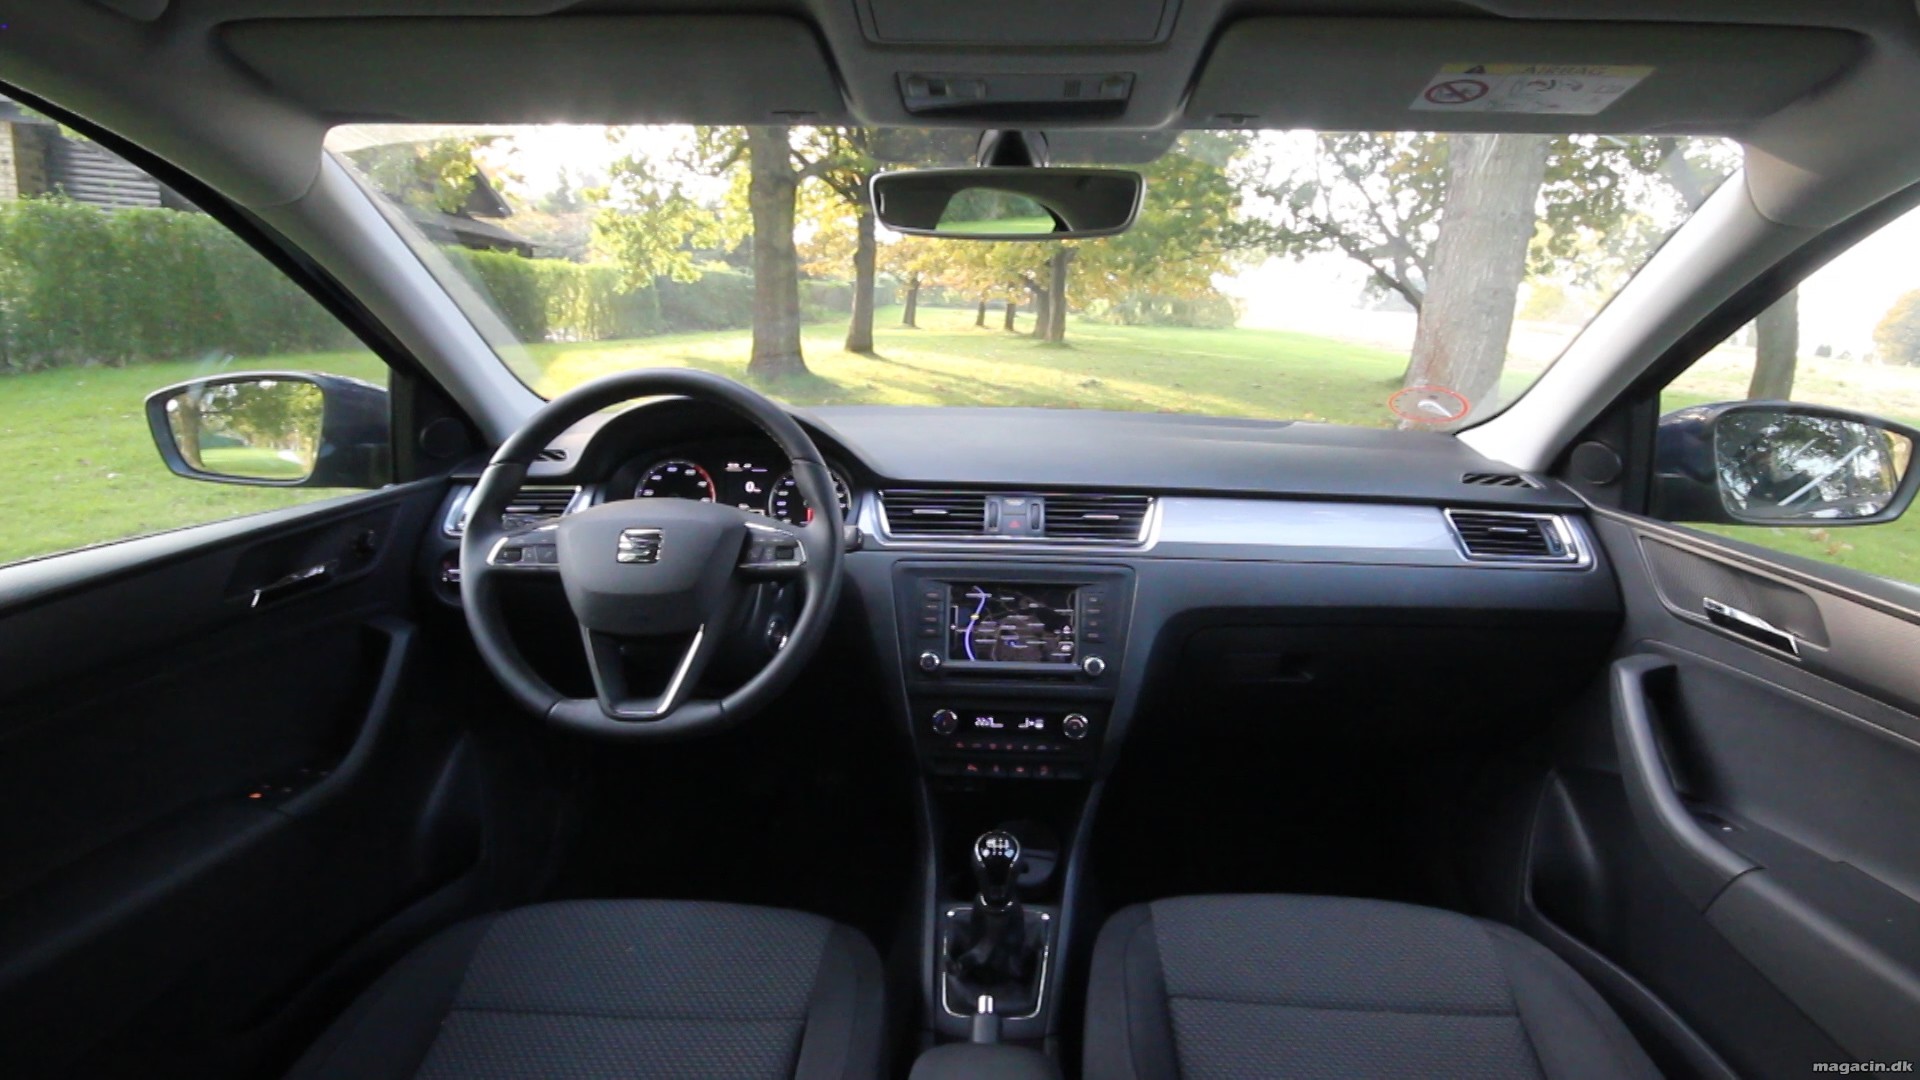 Test: Seat Toledo – rigtig spændende familiebil